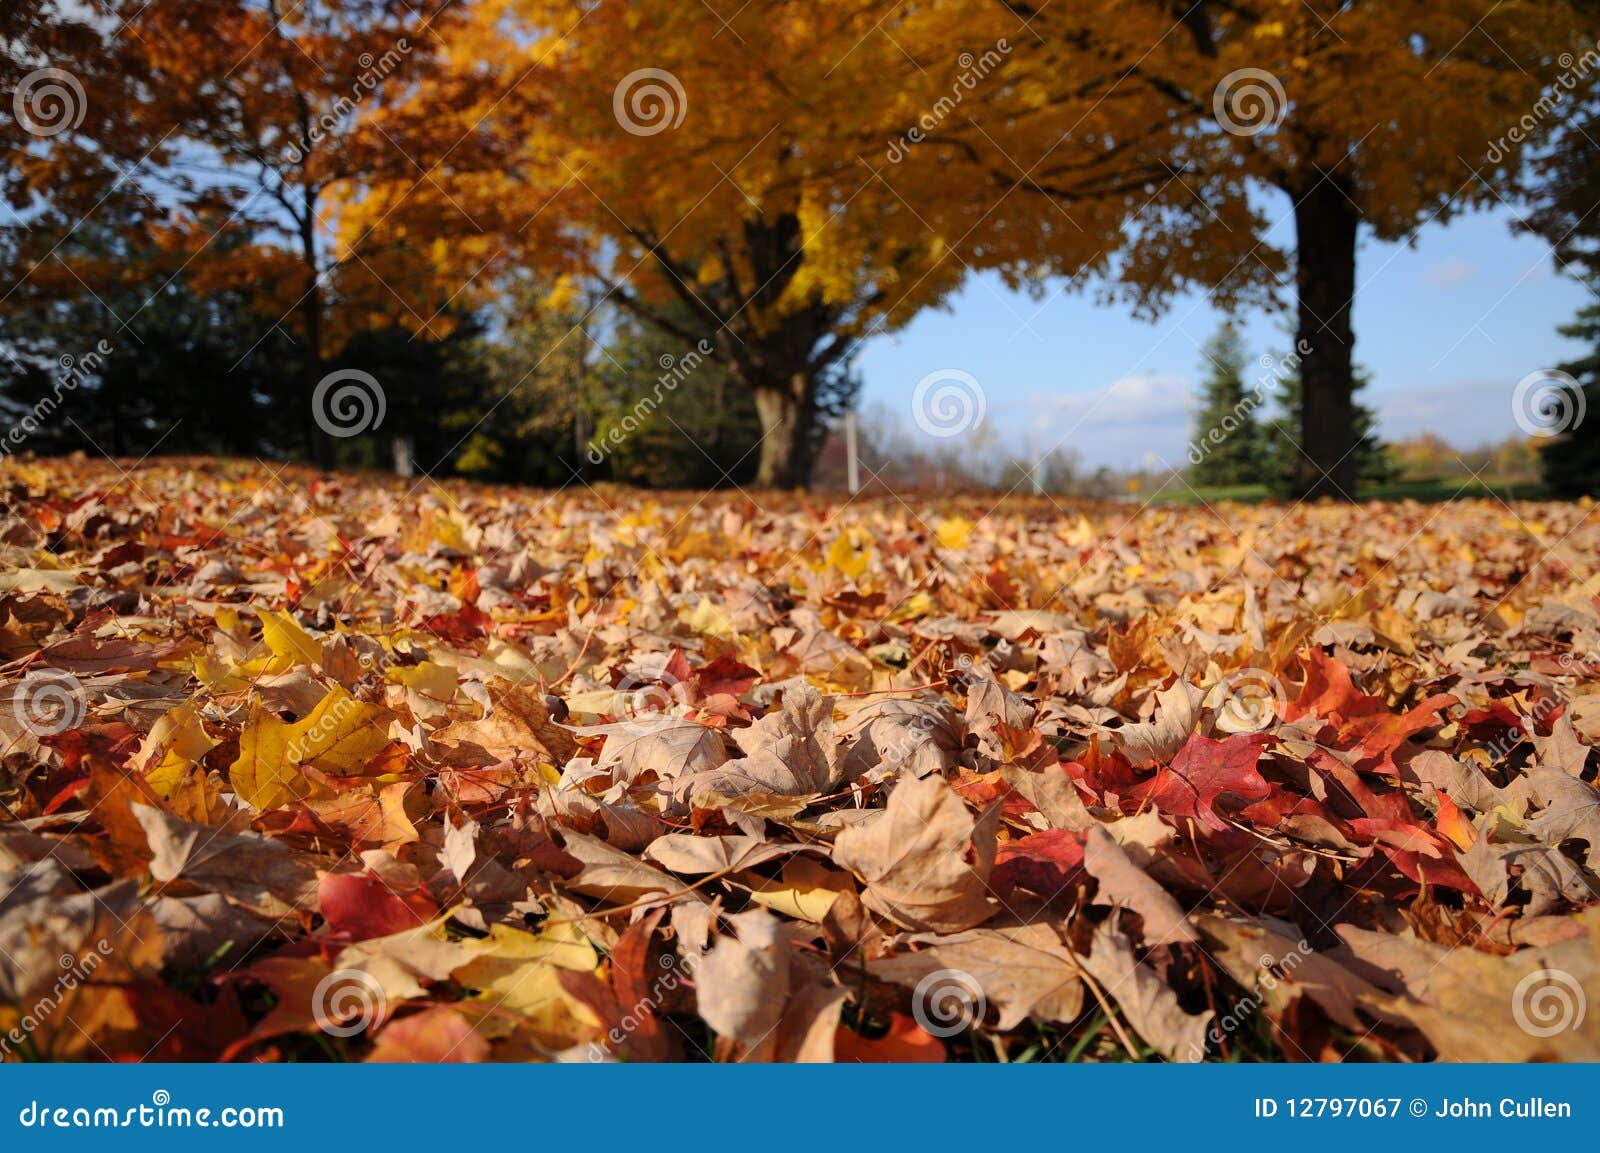 fall colours